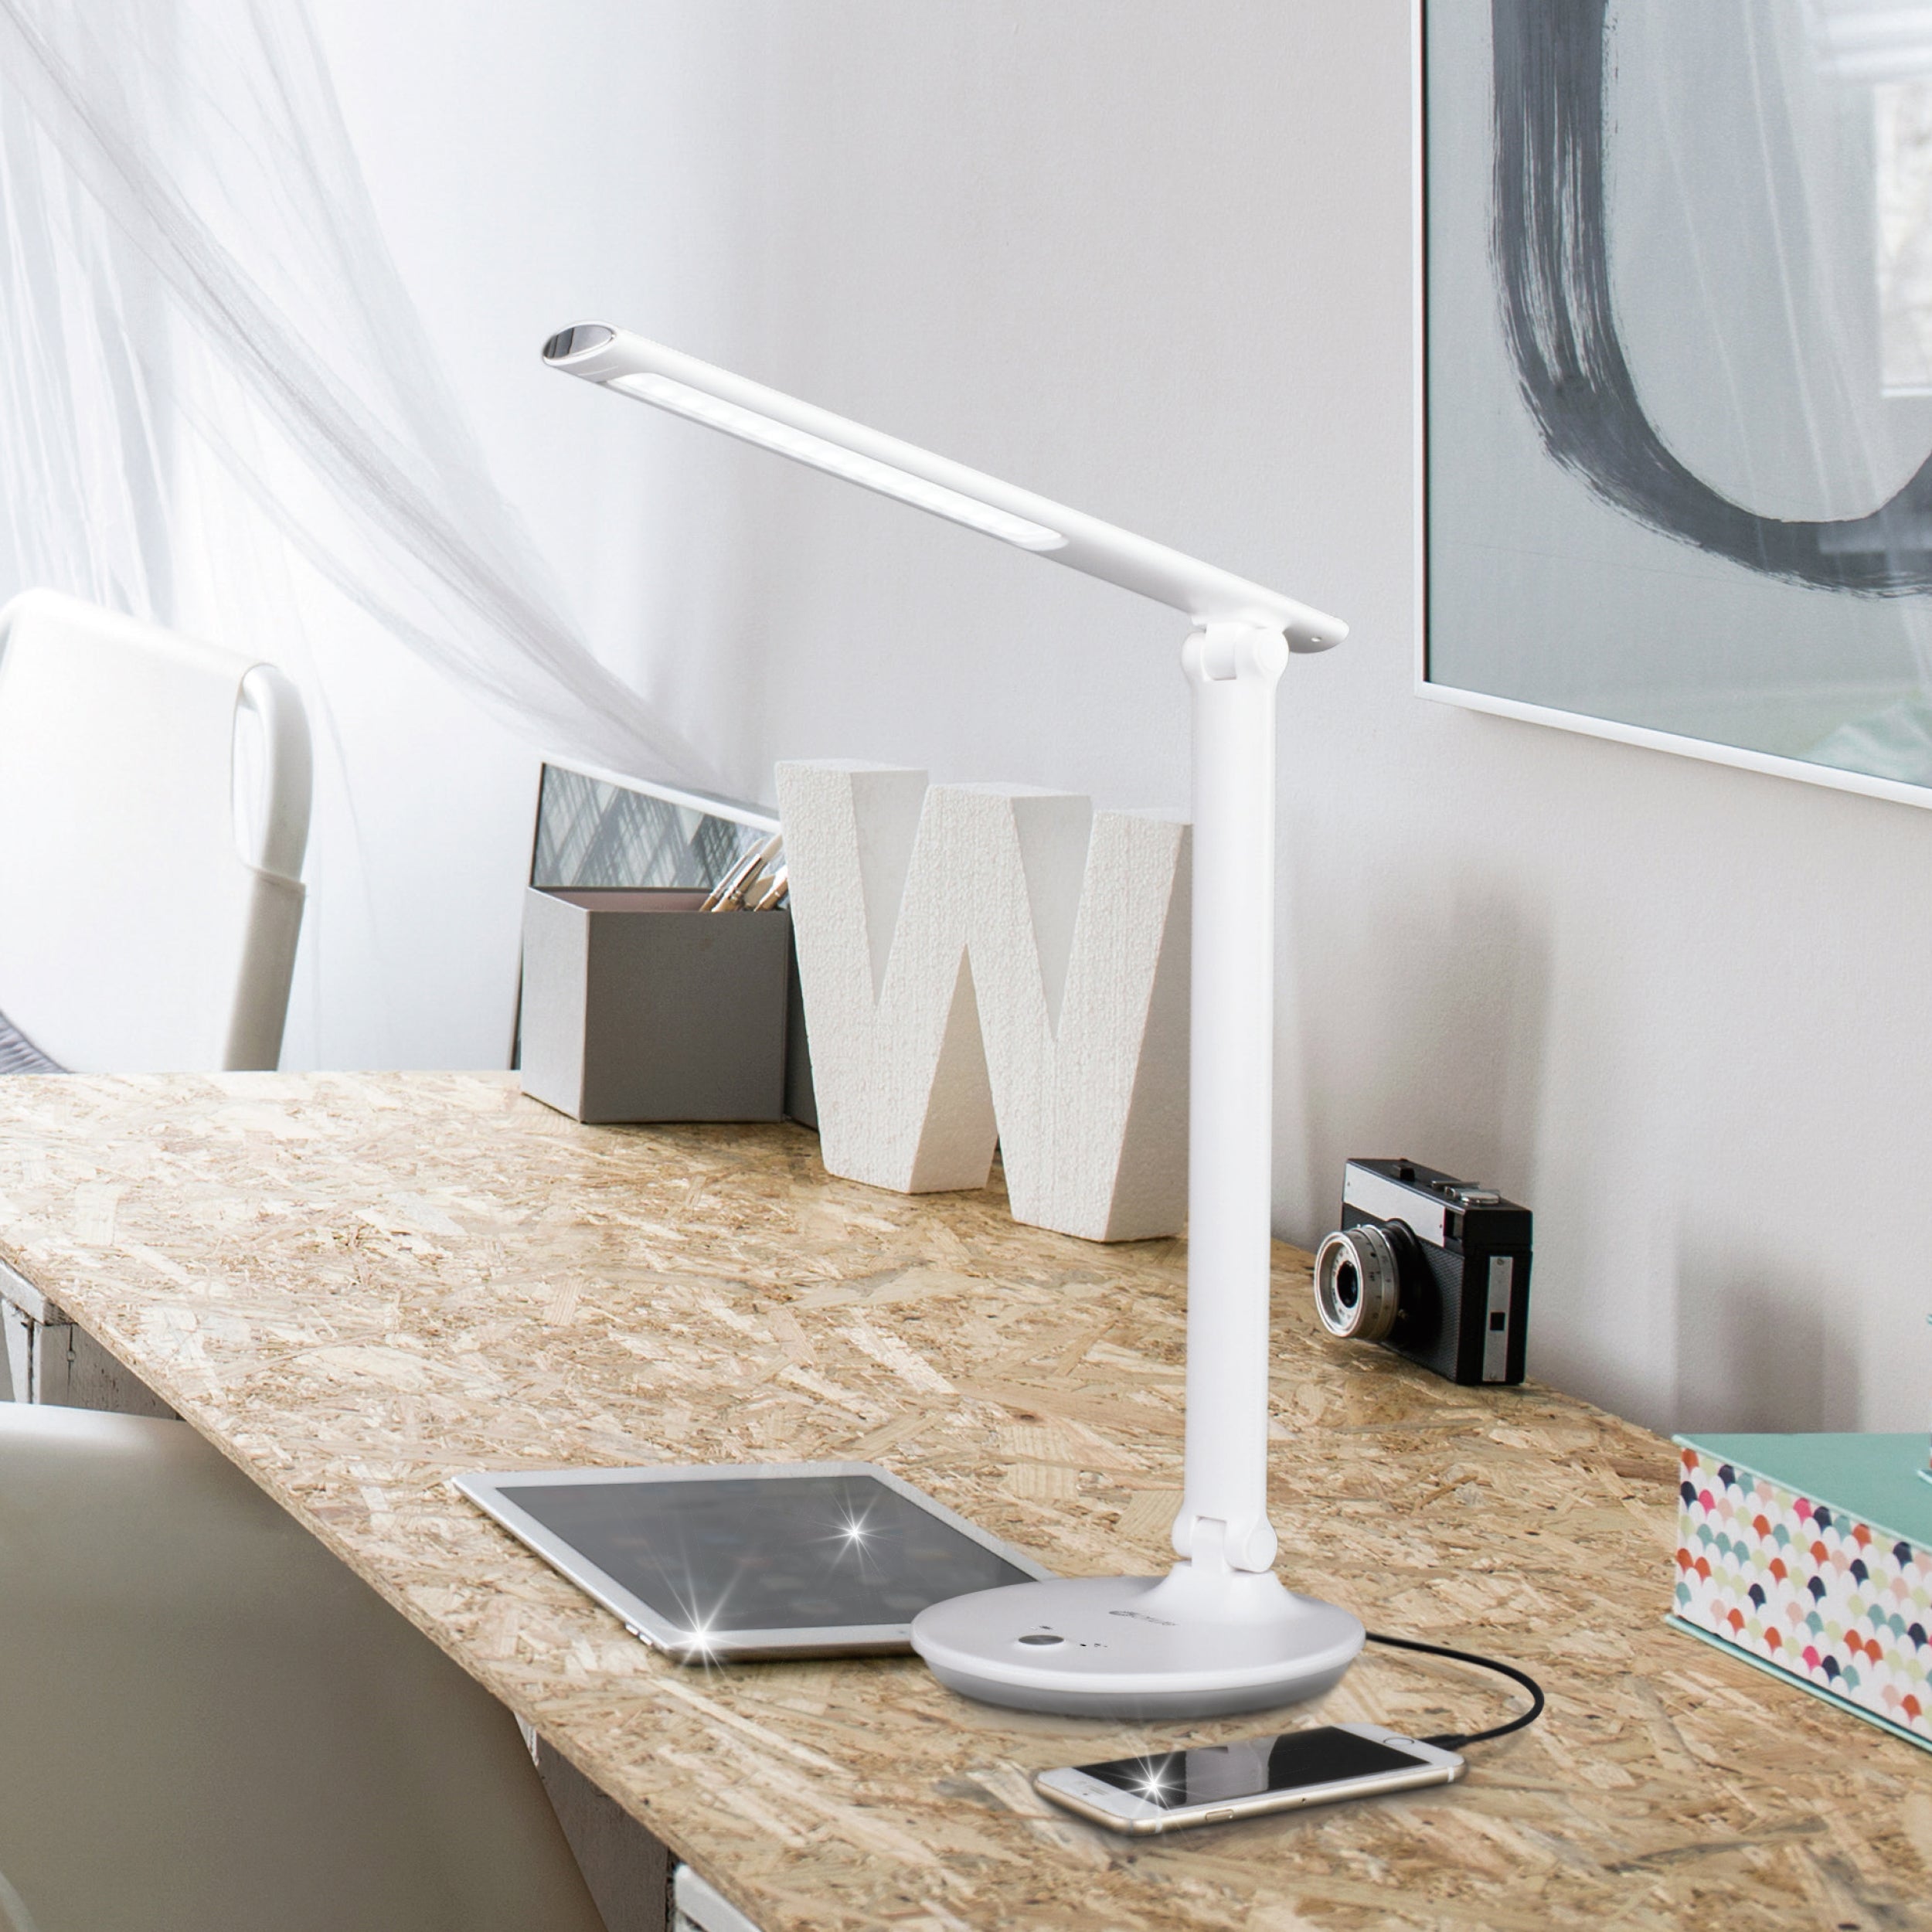 Emerge LED Sanitizing Desk Lamp with USB Charging